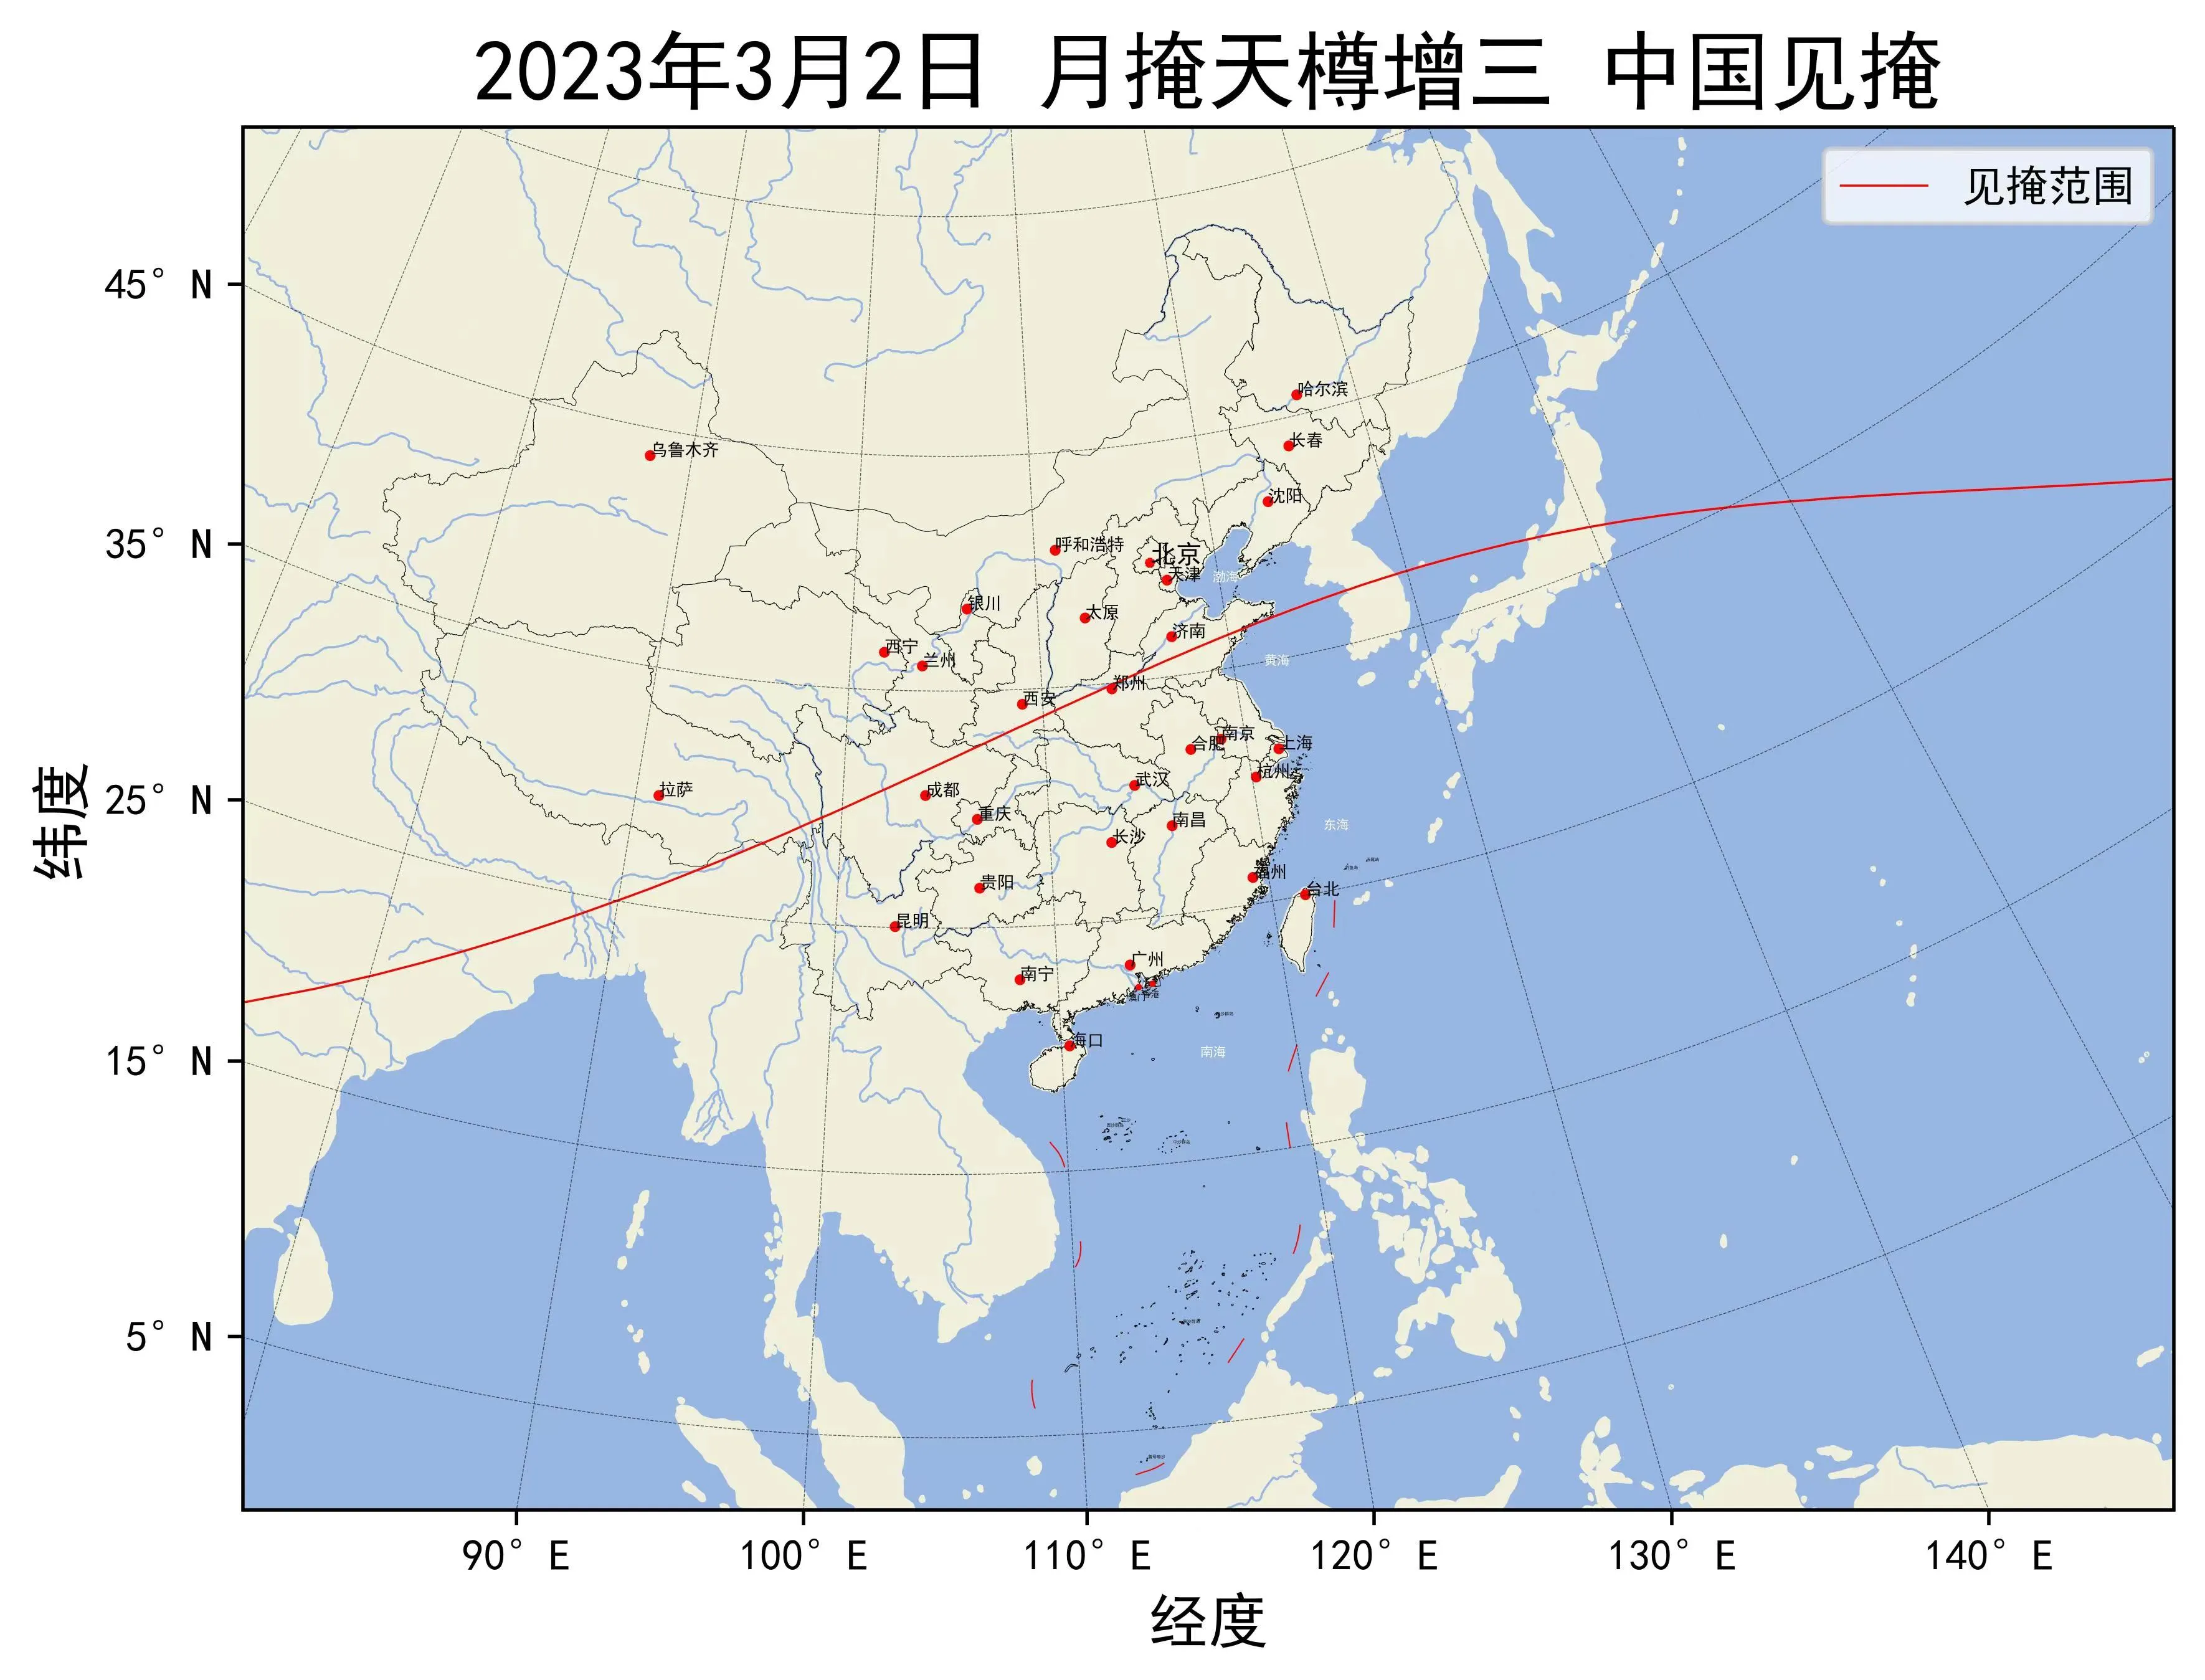 2023年3月2日月掩天樽增三中国见掩